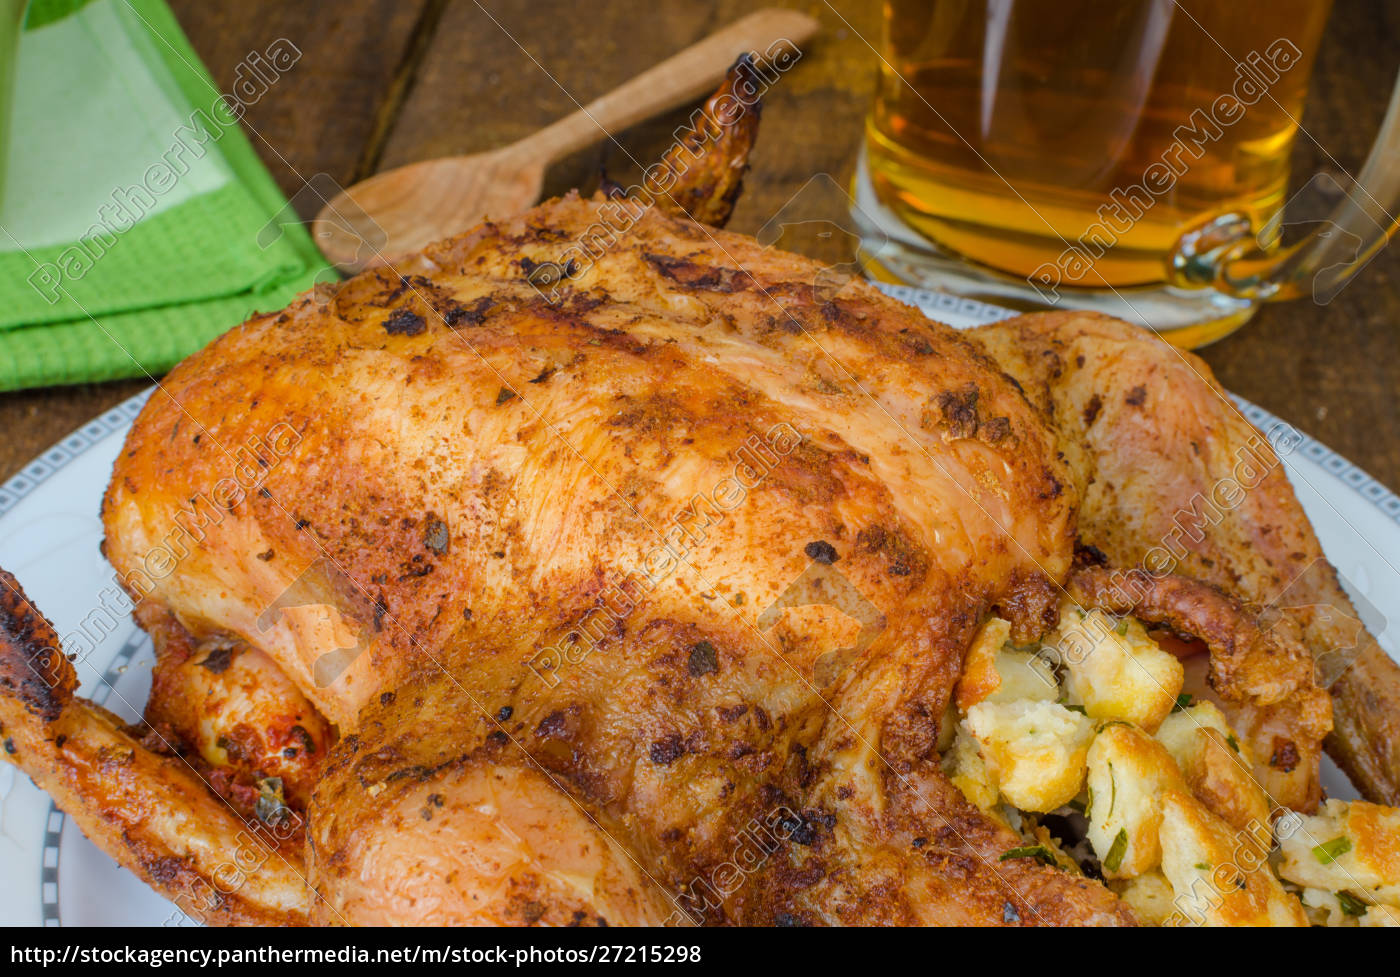 Gegrilltes Huhn gefüllt mit tschechischem Bier - Stockfoto - #27215298 ...